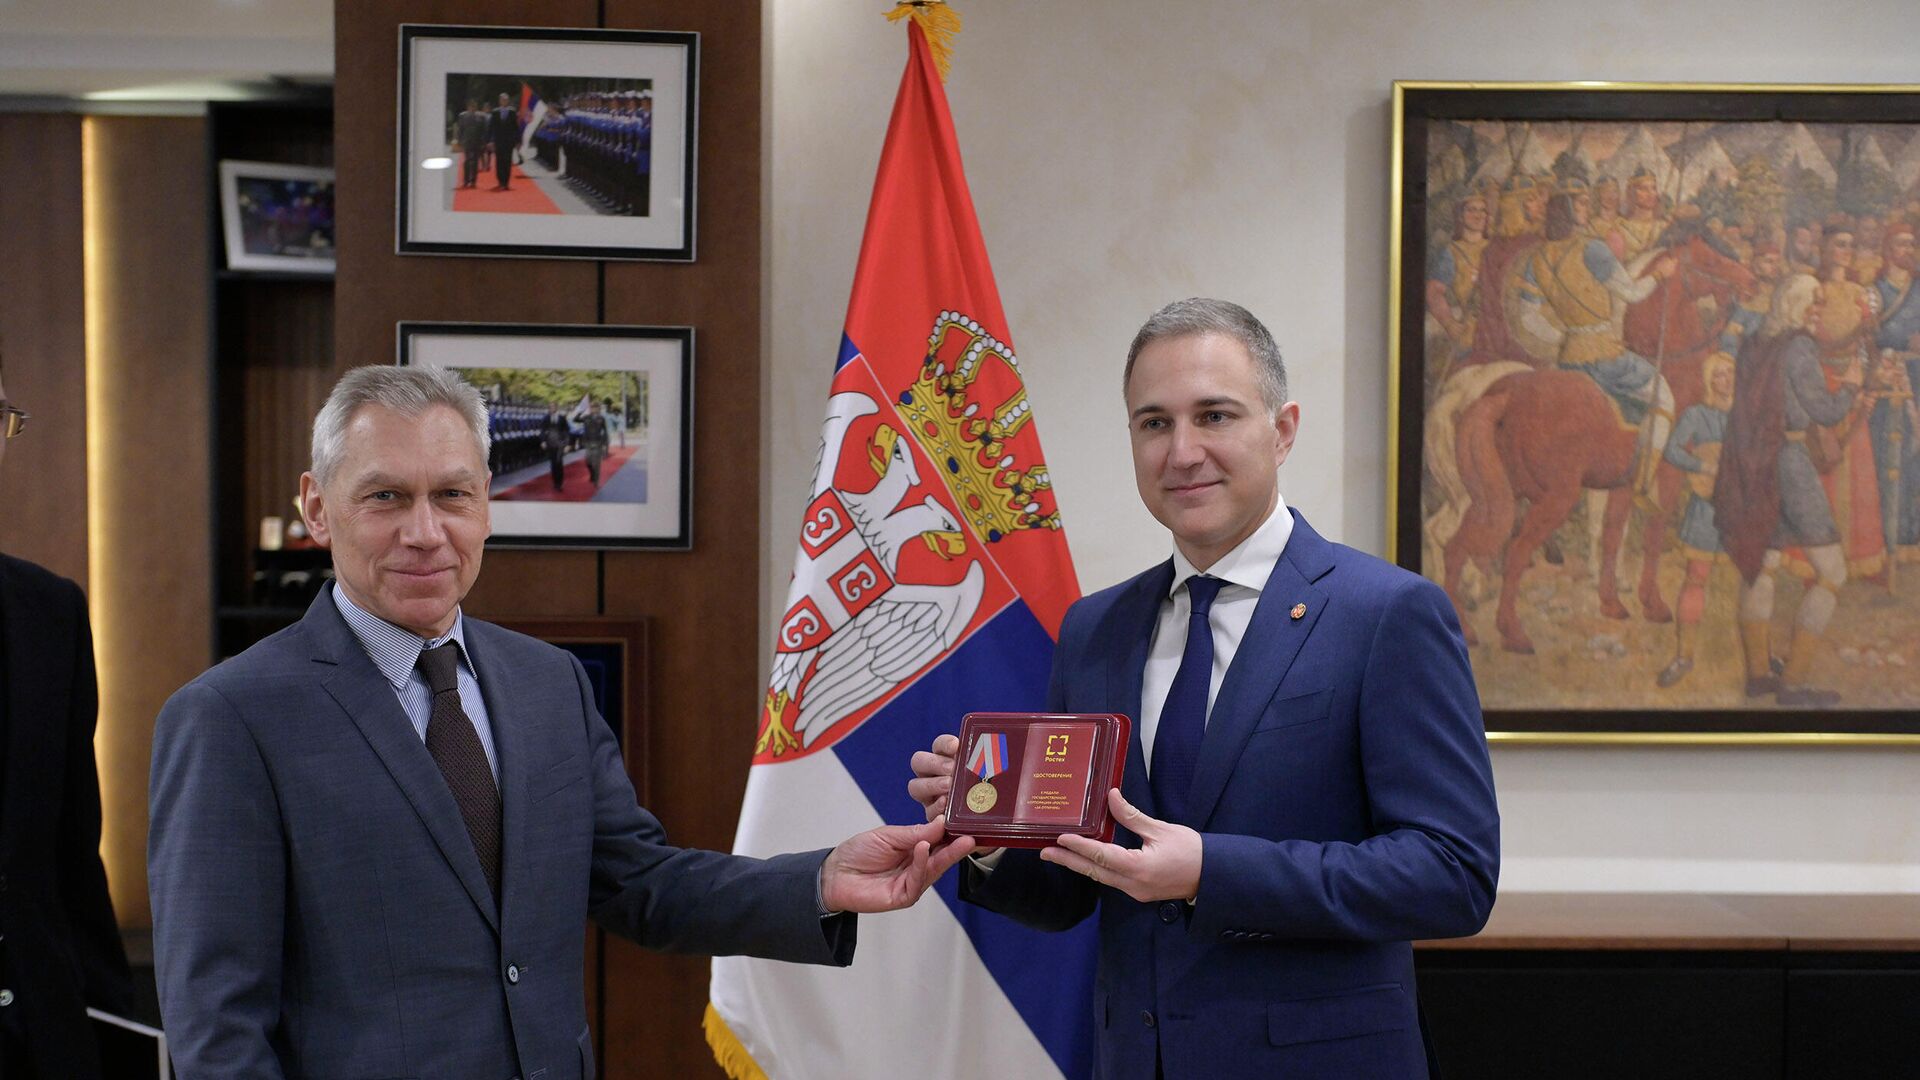 Ambasador Bocan–Harčenko uručio medalju „Rosteha“ ministru Stefanoviću - Sputnik Srbija, 1920, 28.12.2021